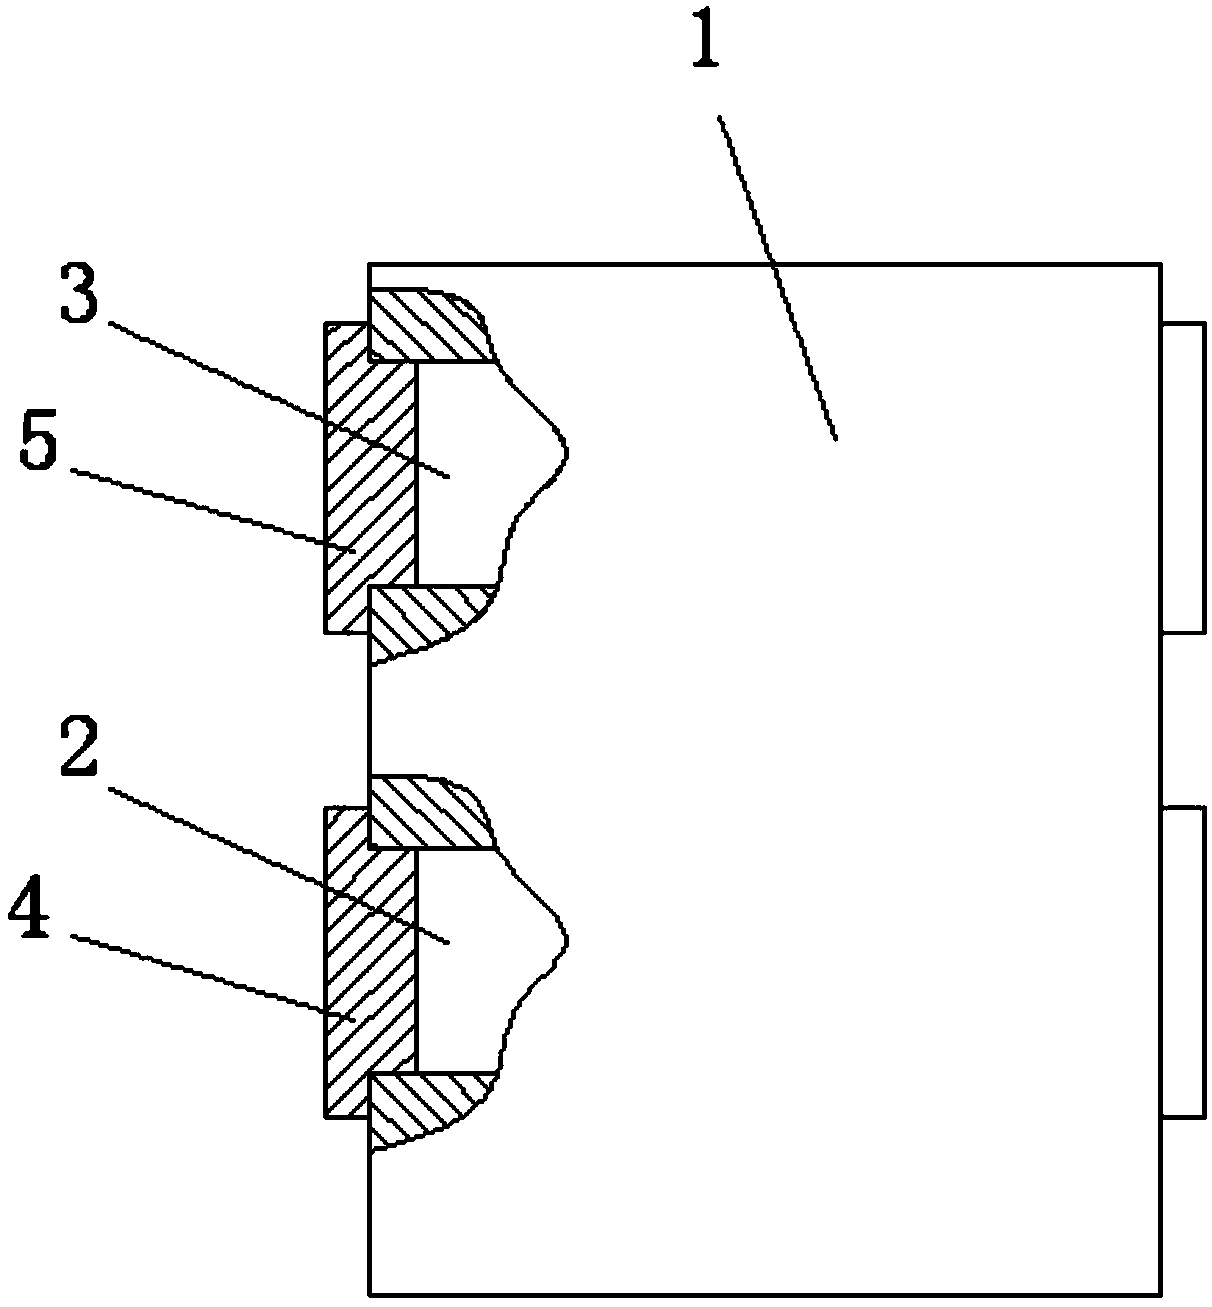 Method for storing valve